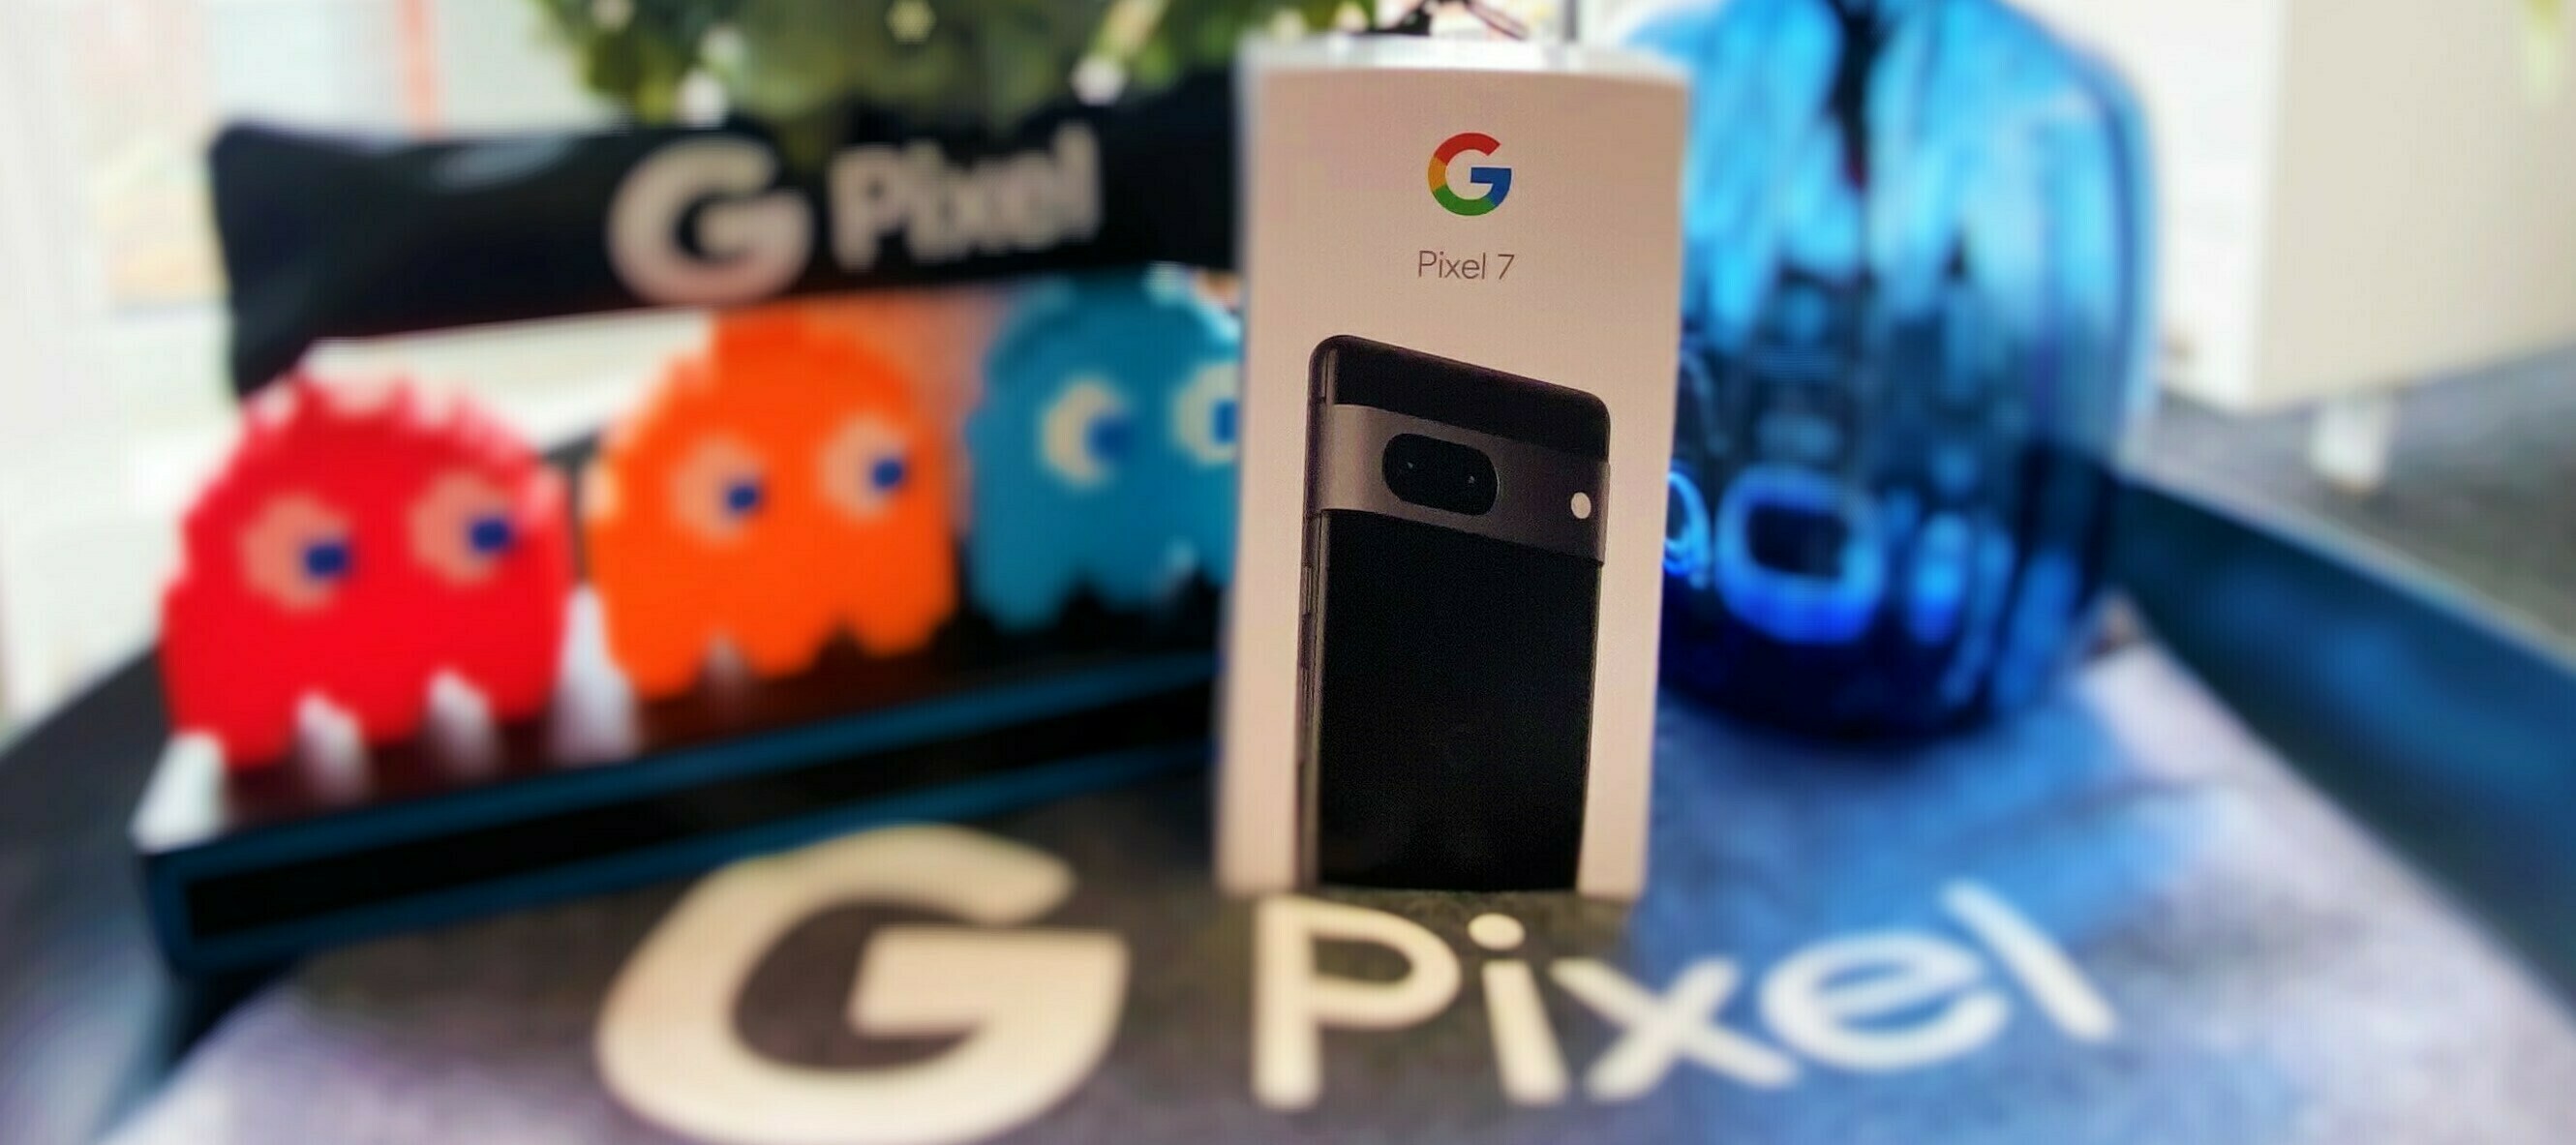 Google Pixel 7 - teste jetzt den Alleskönner!